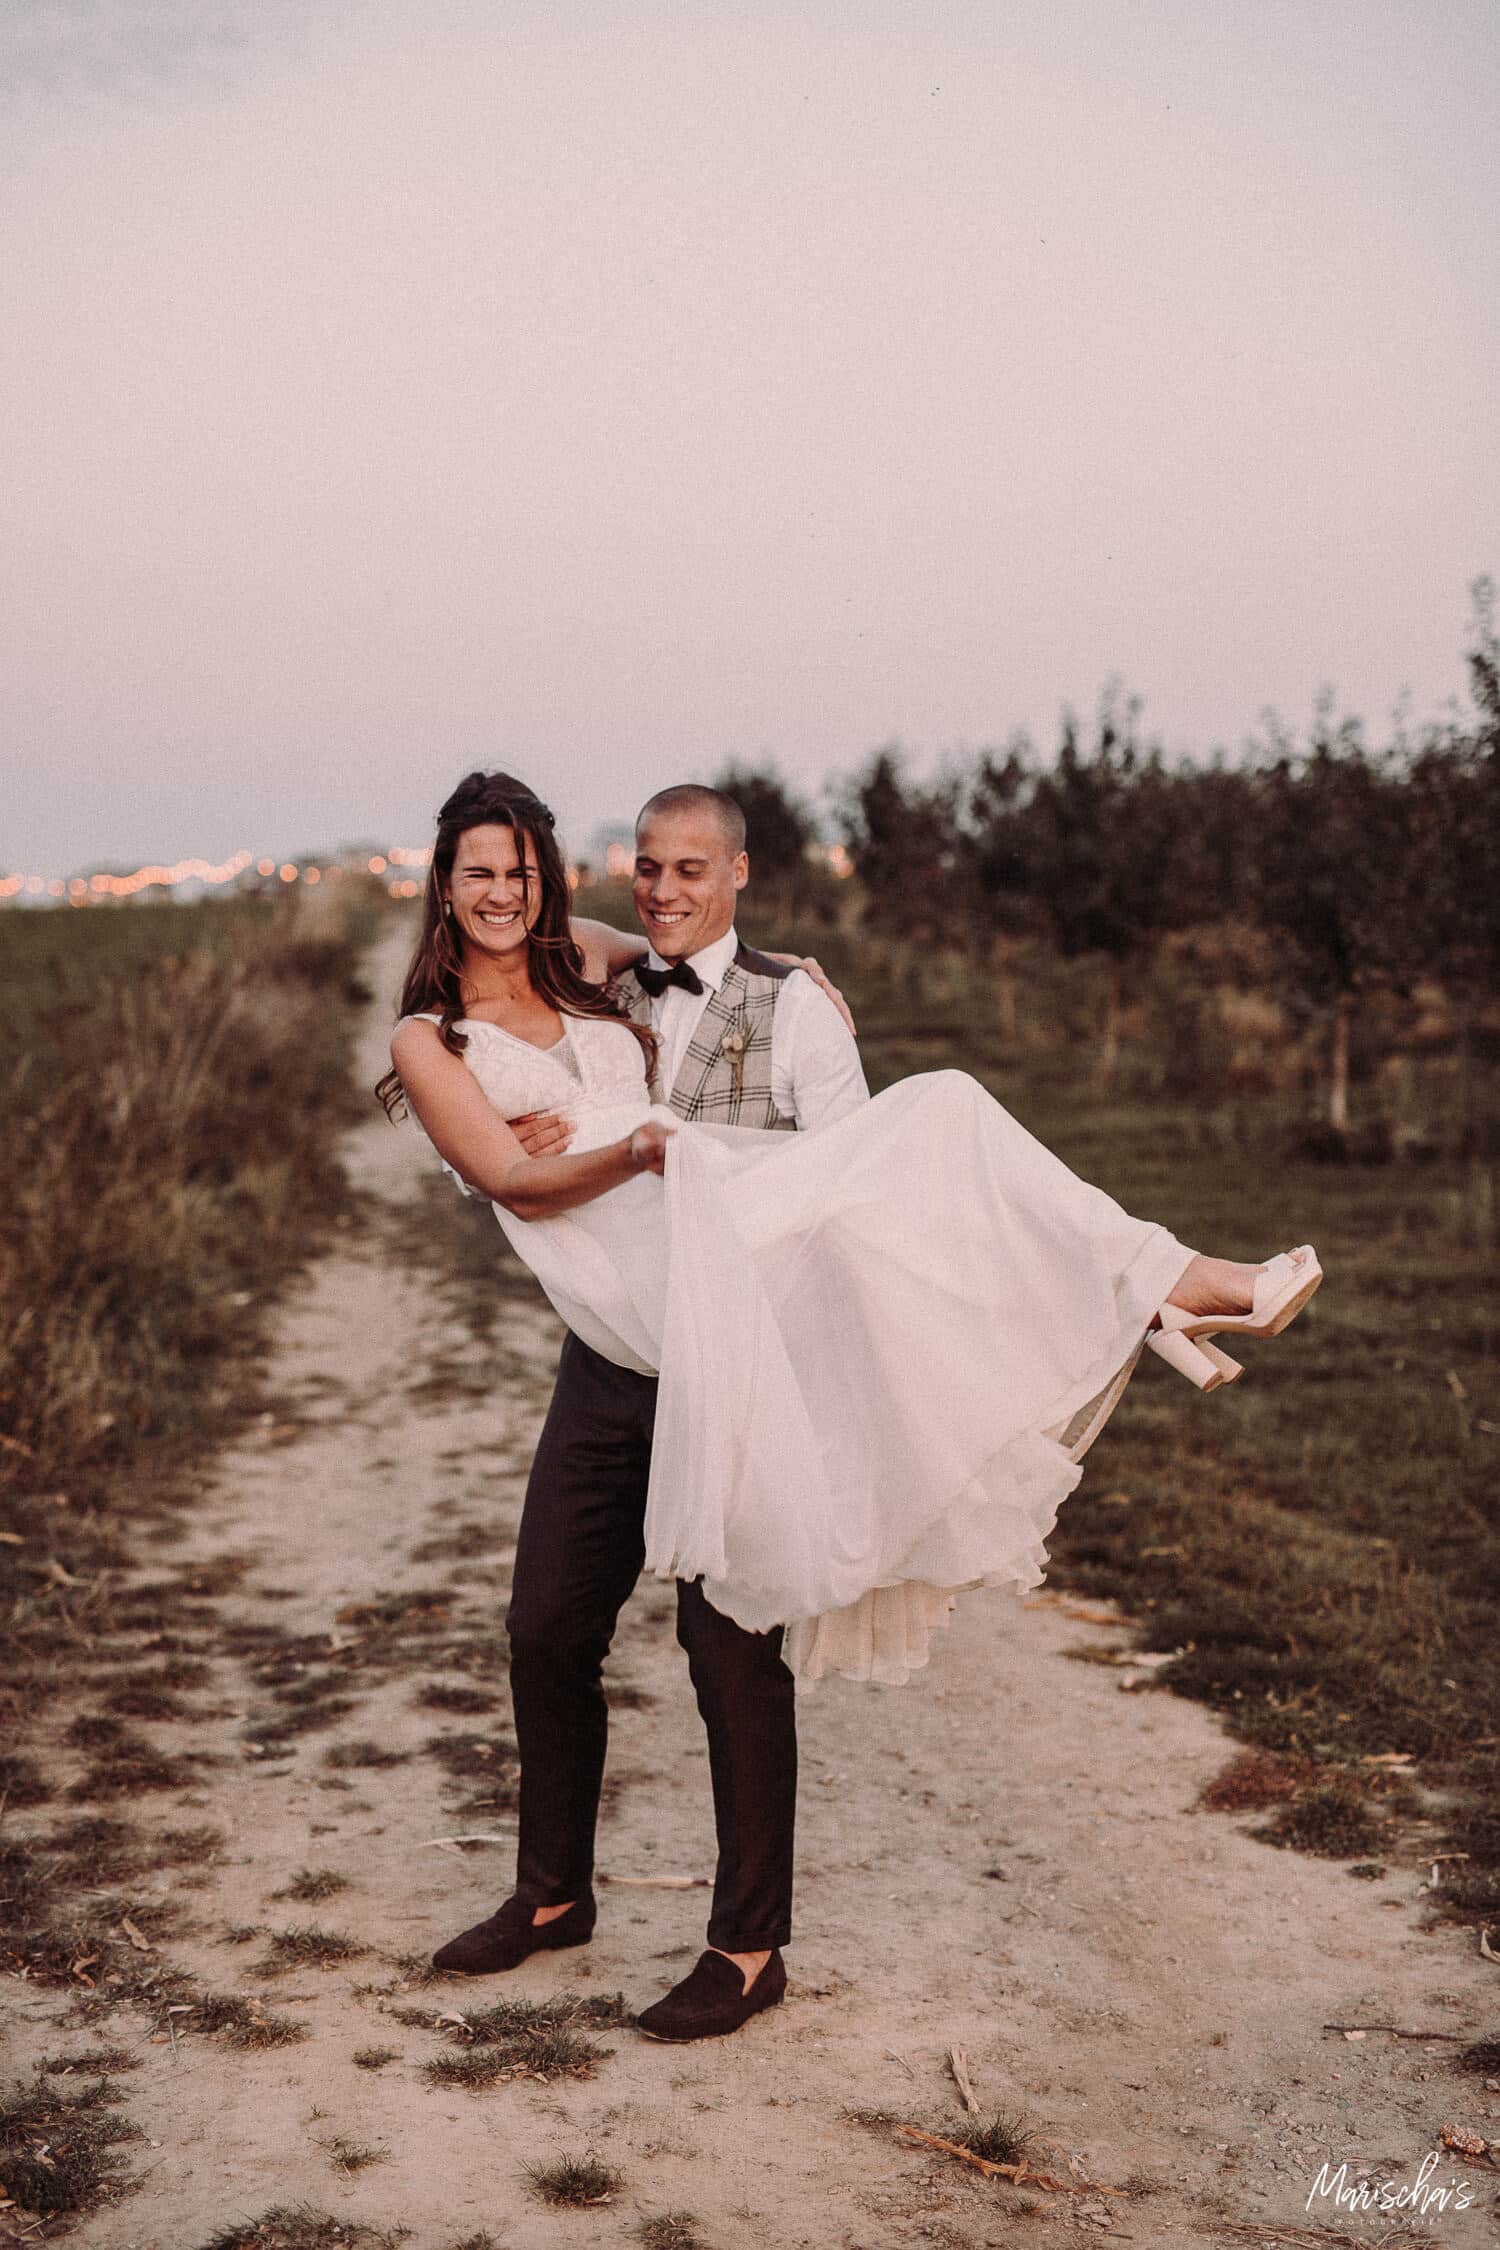 Bruidsfotograaf voor een bruidsreportage van een bruiloft in regio Flevoland